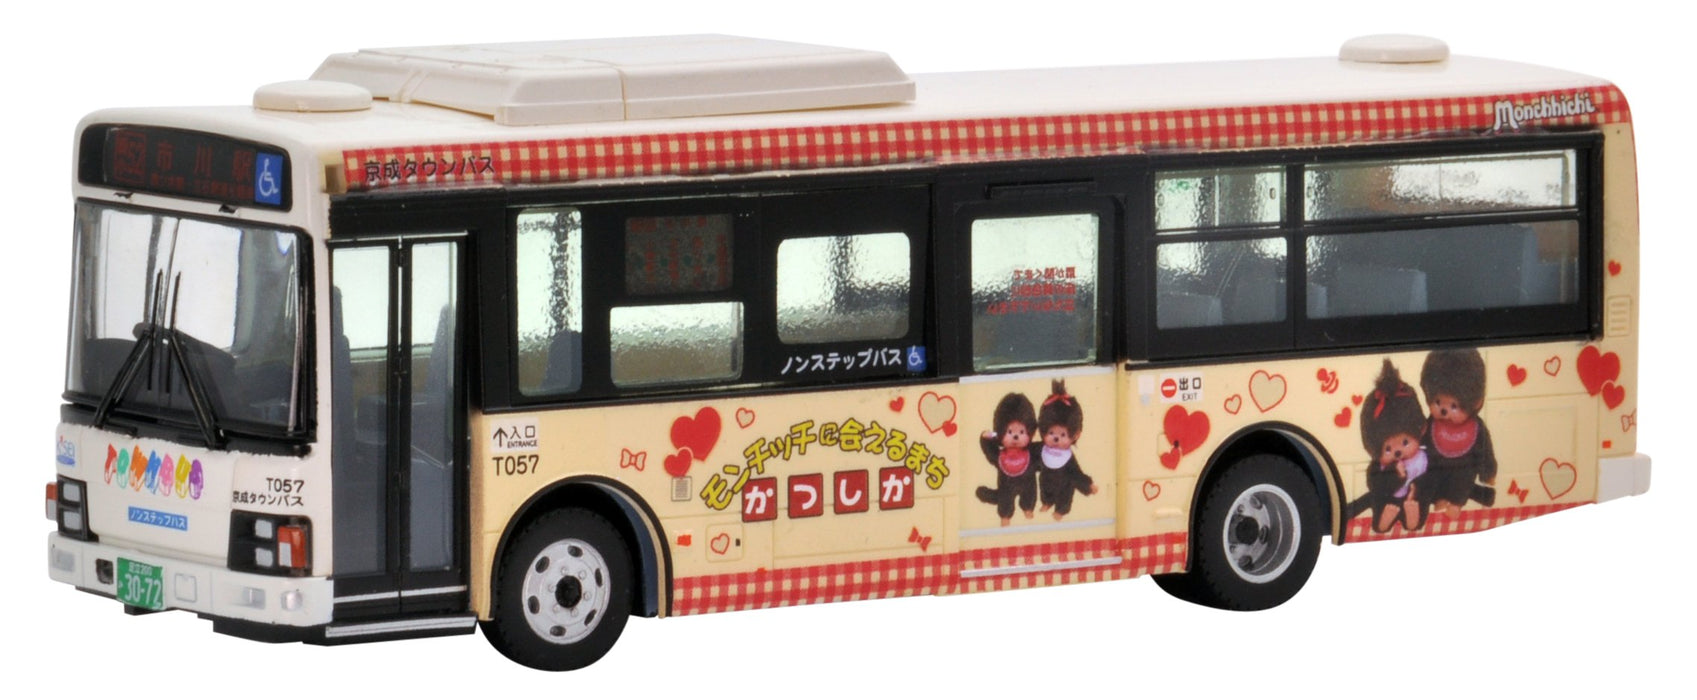 Tomytec National Bus Collection Jh022 1/80 Keisei Town Katsushika emballage bus édition photo